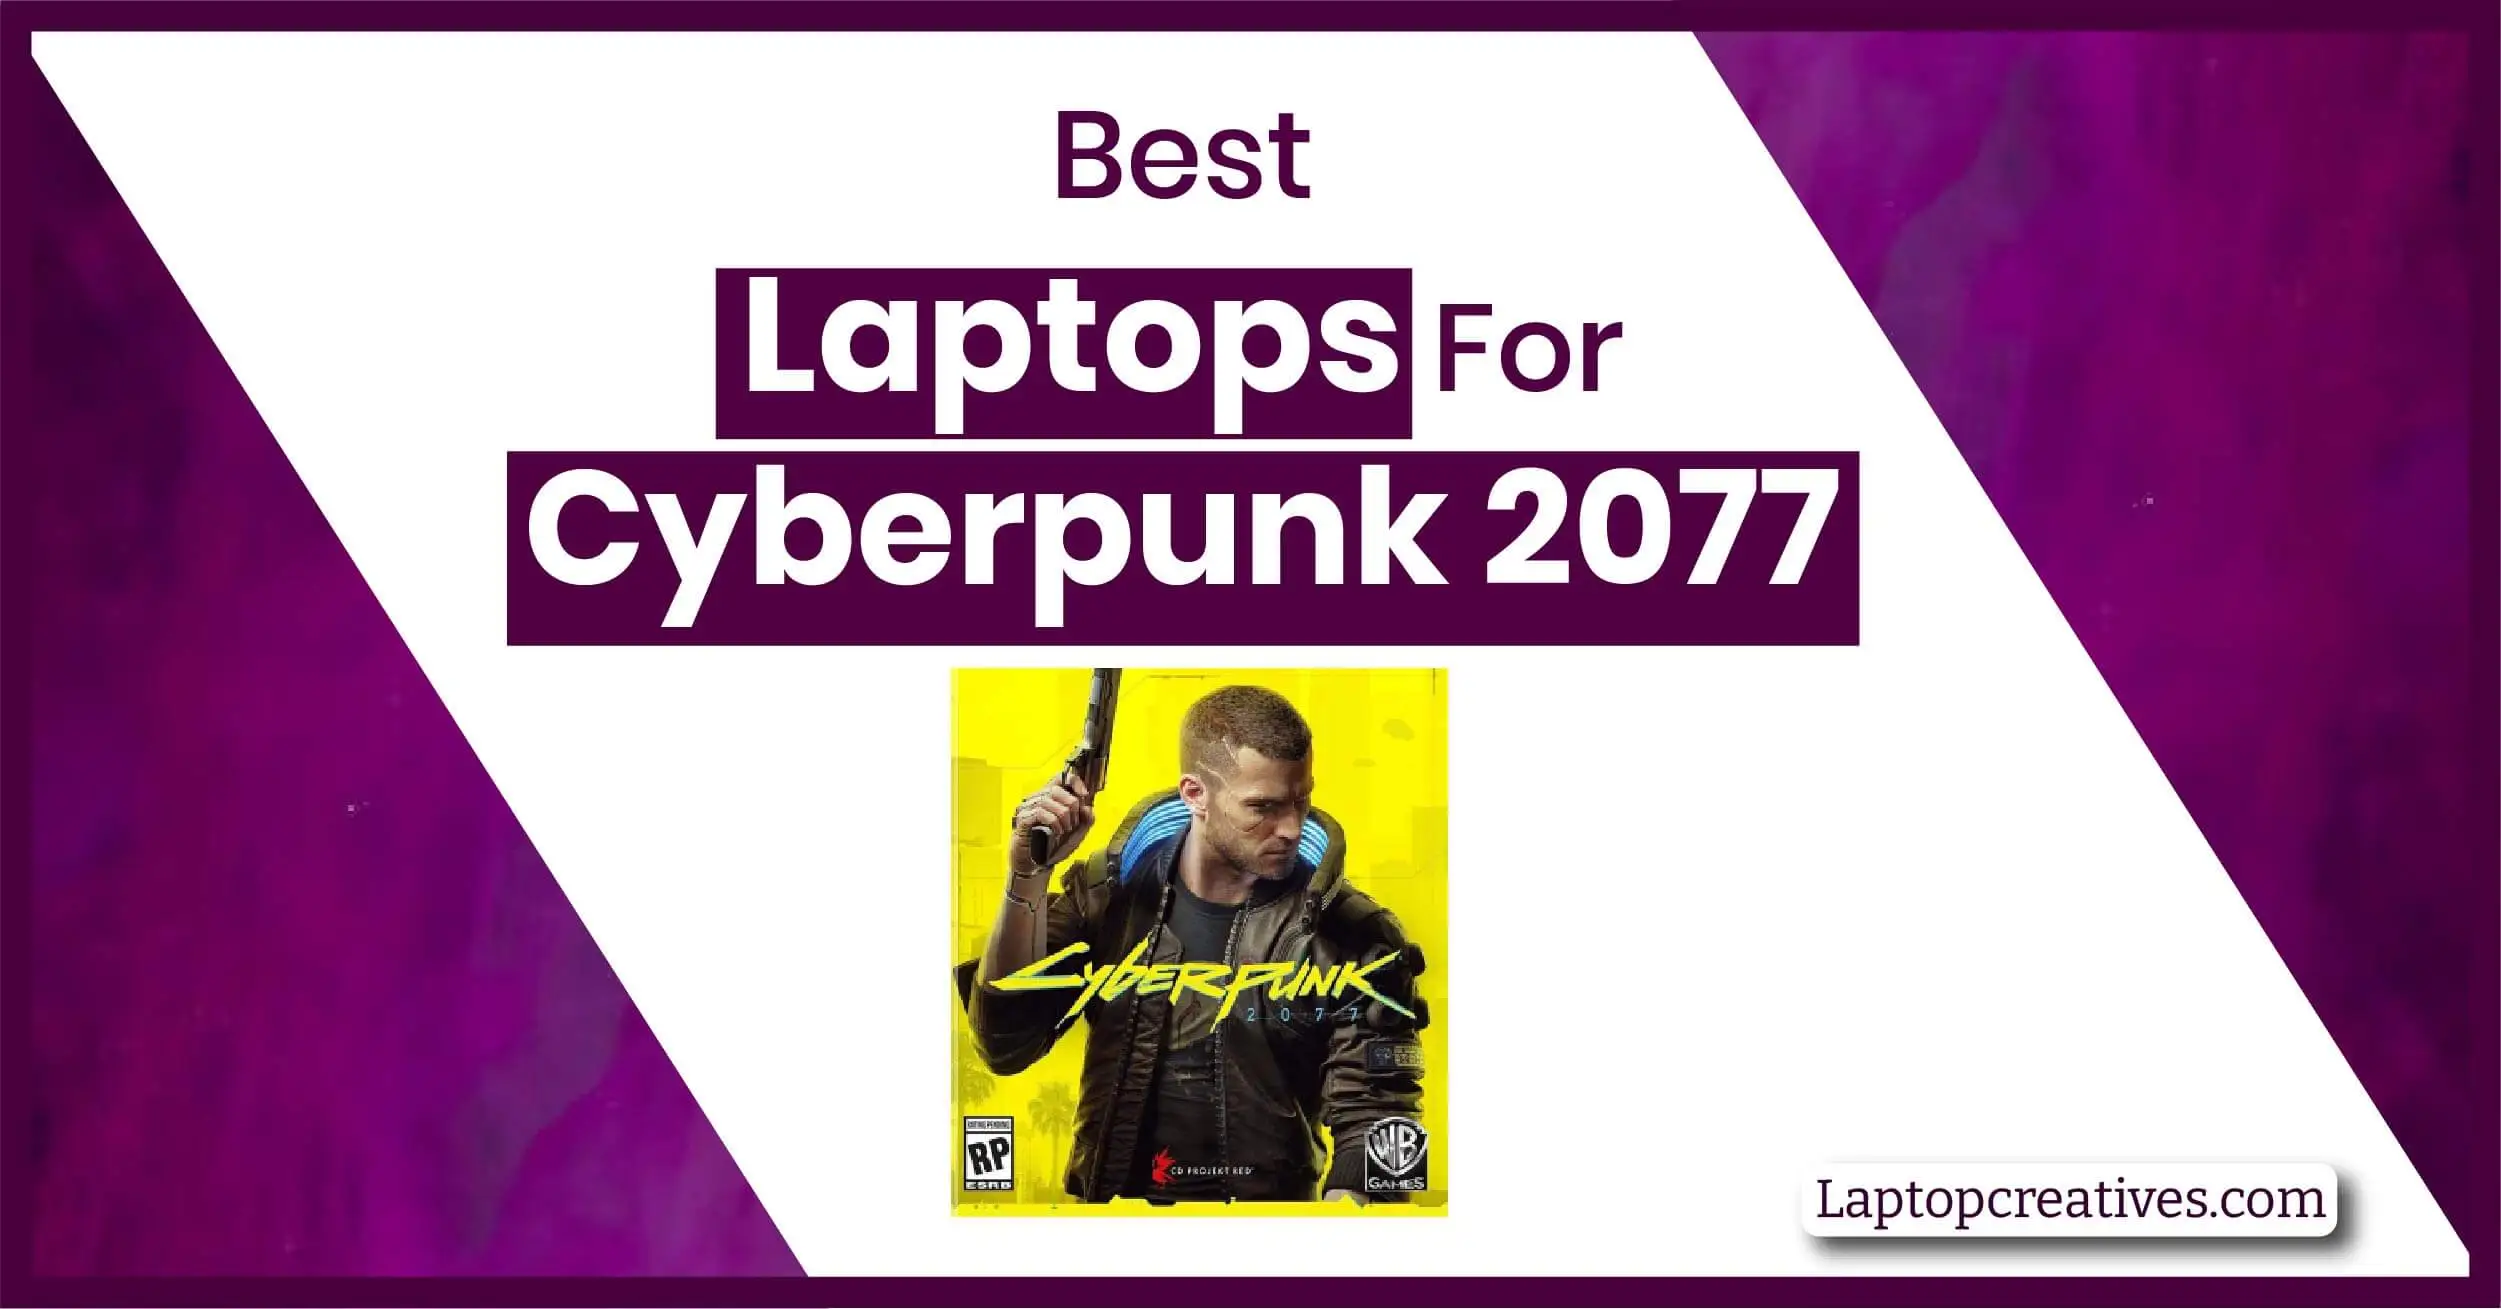 Best Laptops for Cyberpunk 2077